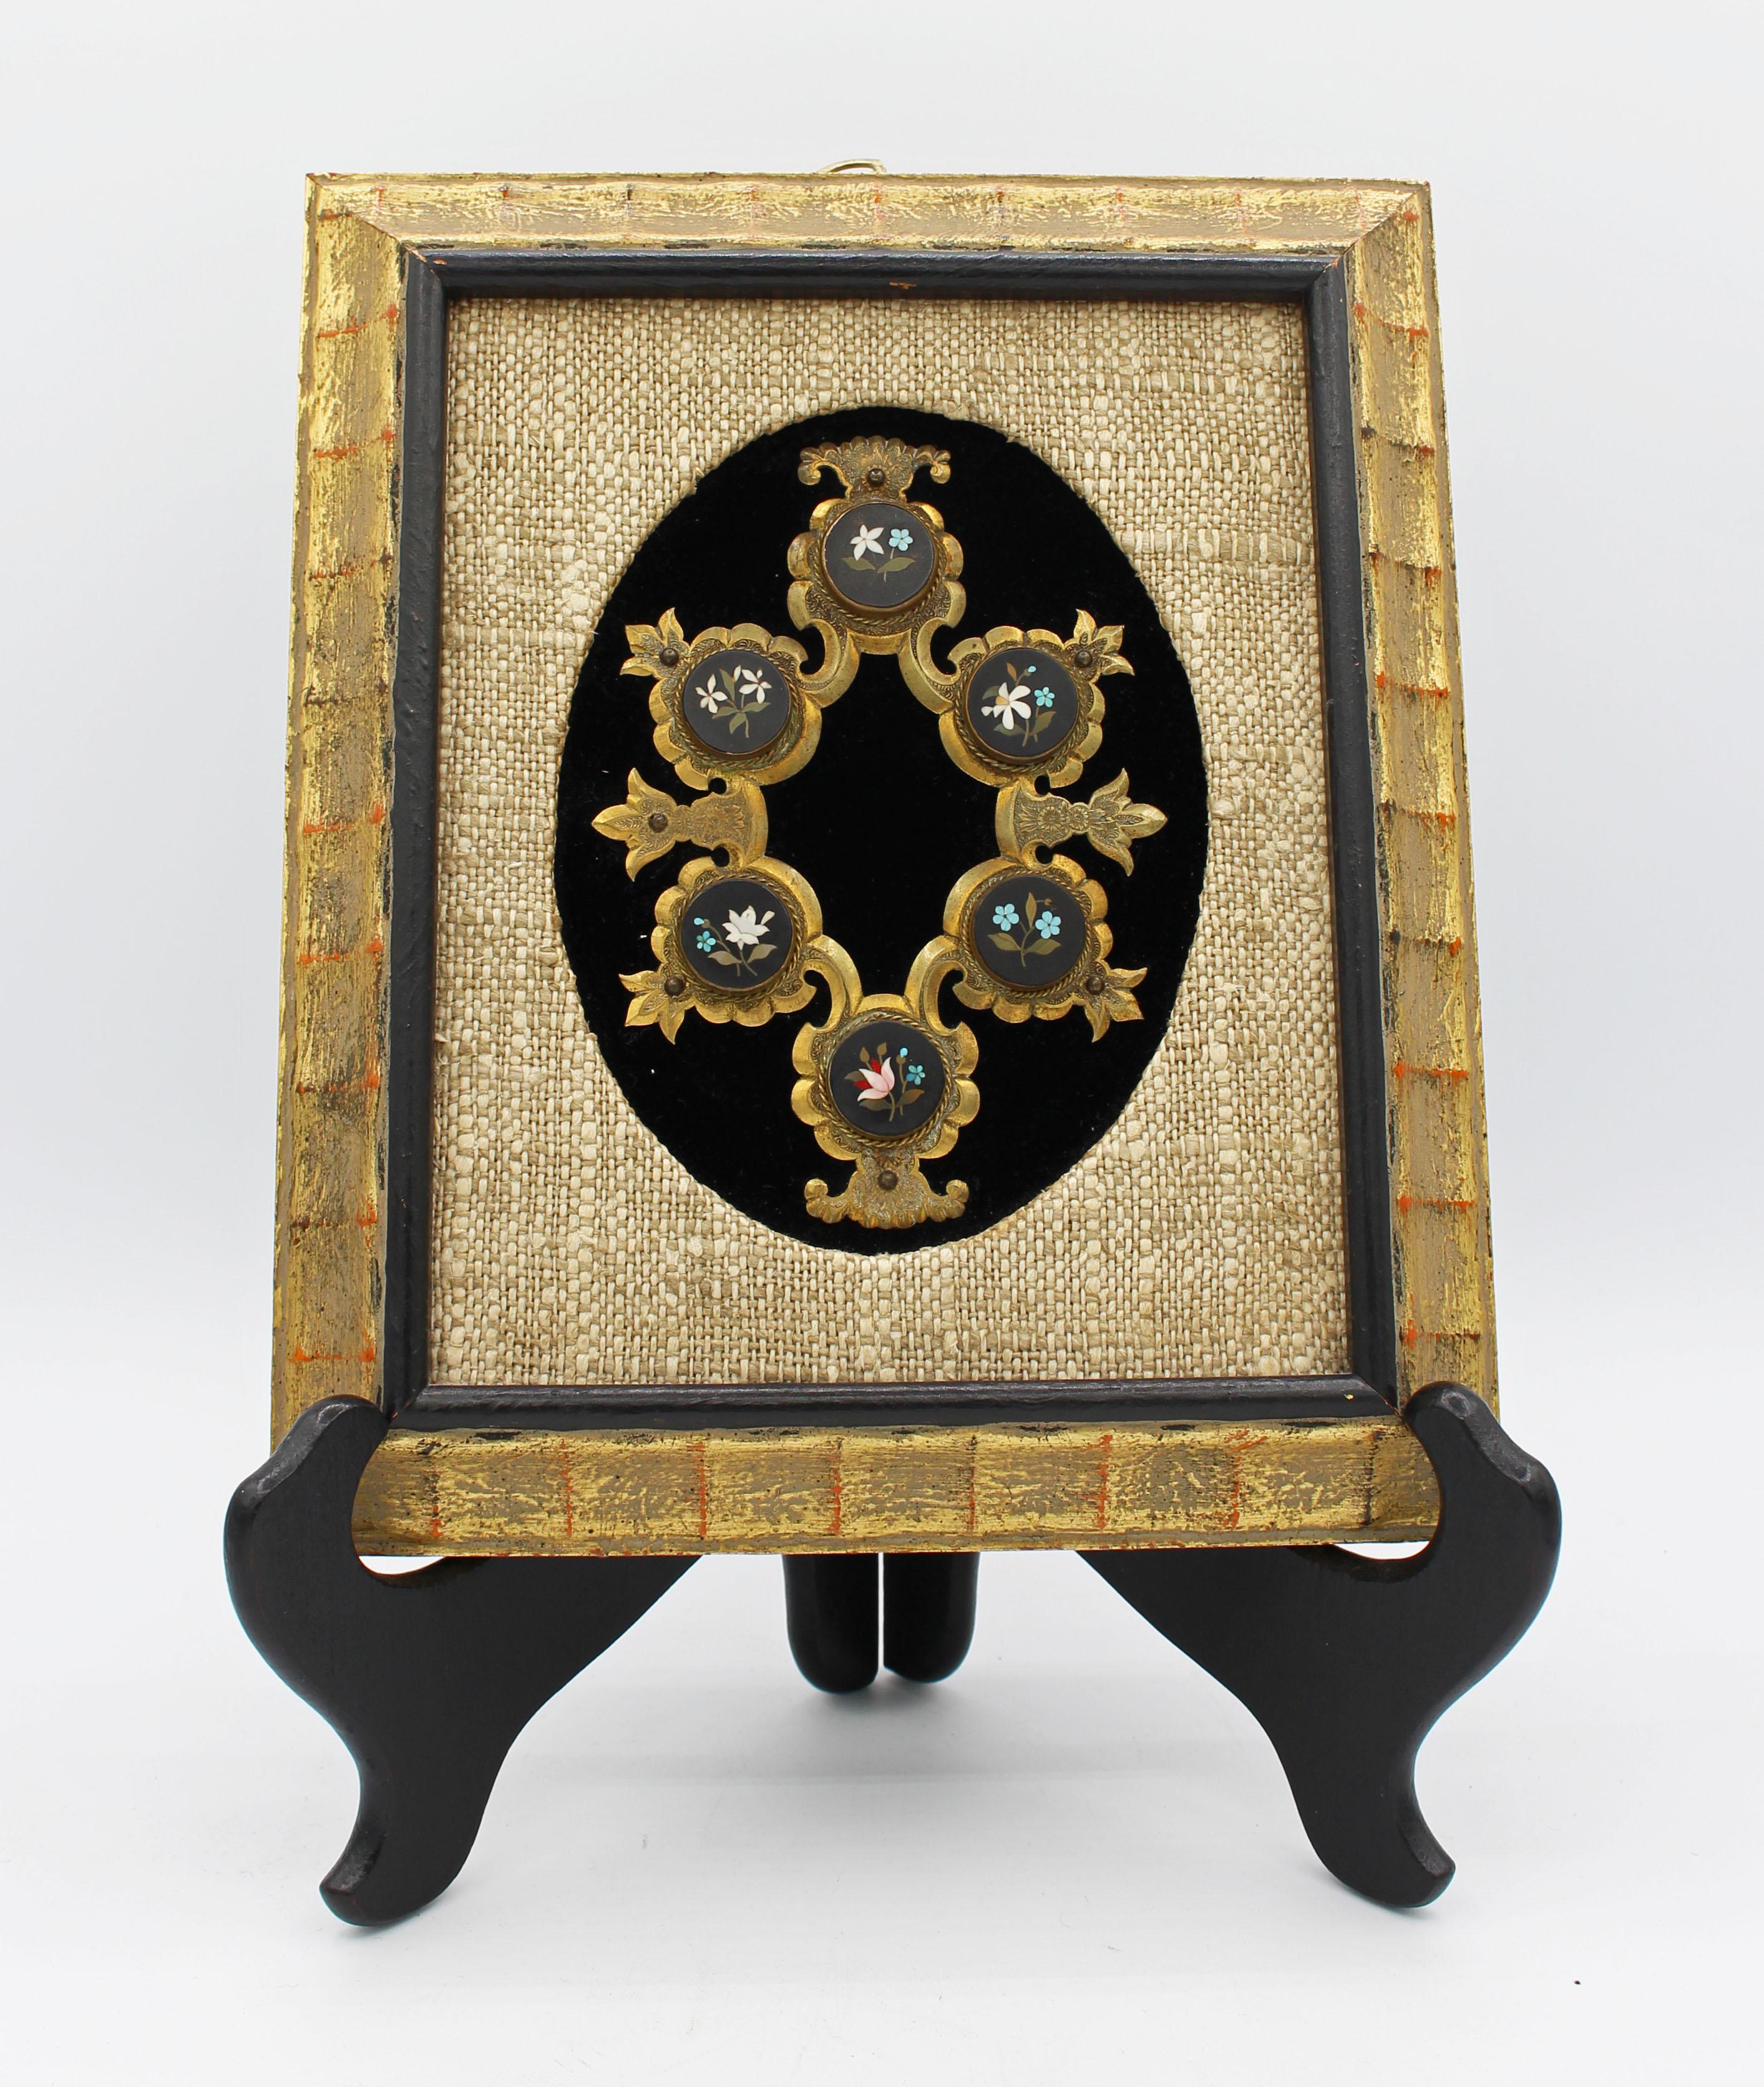 Italien, c.1880, cartouche en laiton doré gravé et serti de six médaillons circulaires floraux en pietra dura, maintenant sur un fond de velours noir avec un mat de lin dans un cadre doré frotté. Une qualité d'exécution exceptionnelle. Il manque un